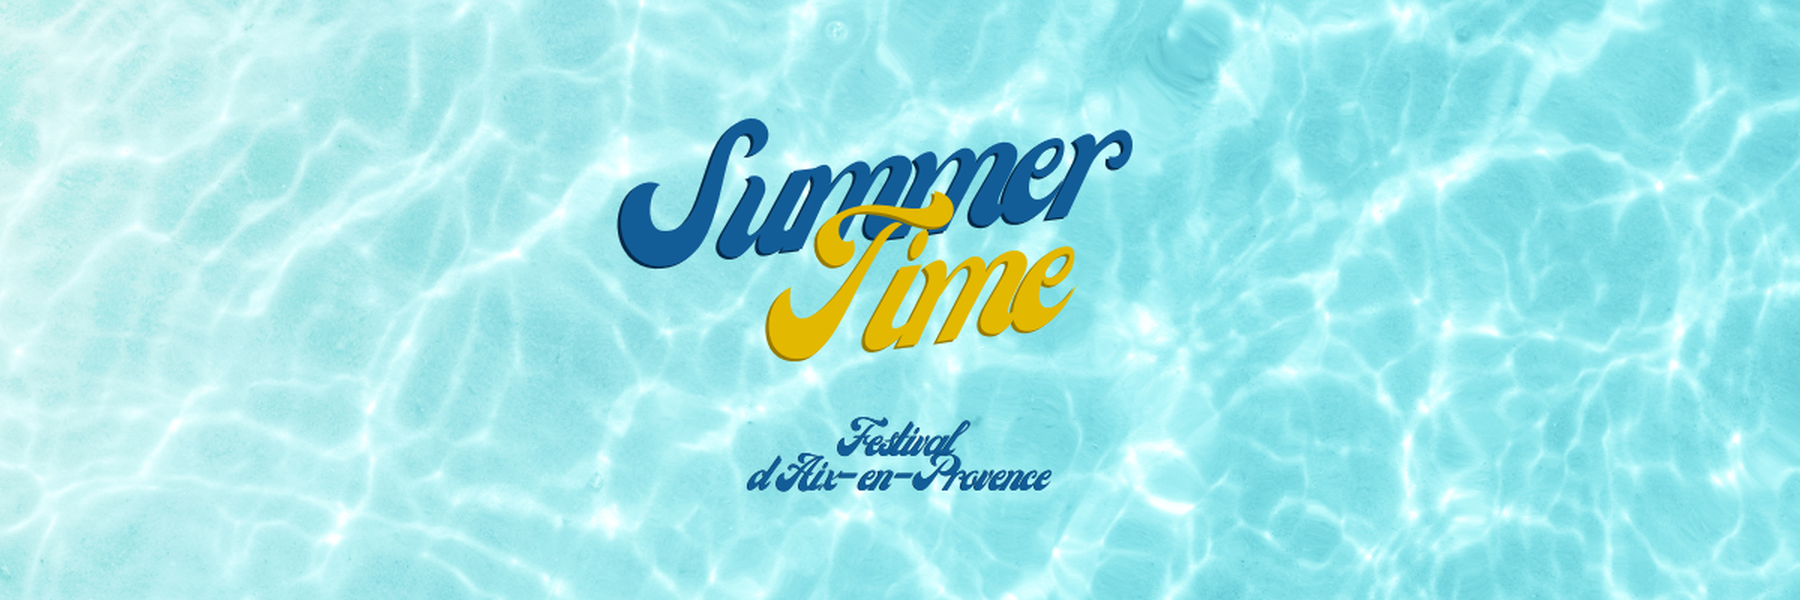 <h1>July under Aix-en-Provence&rsquo;s sun</h1>